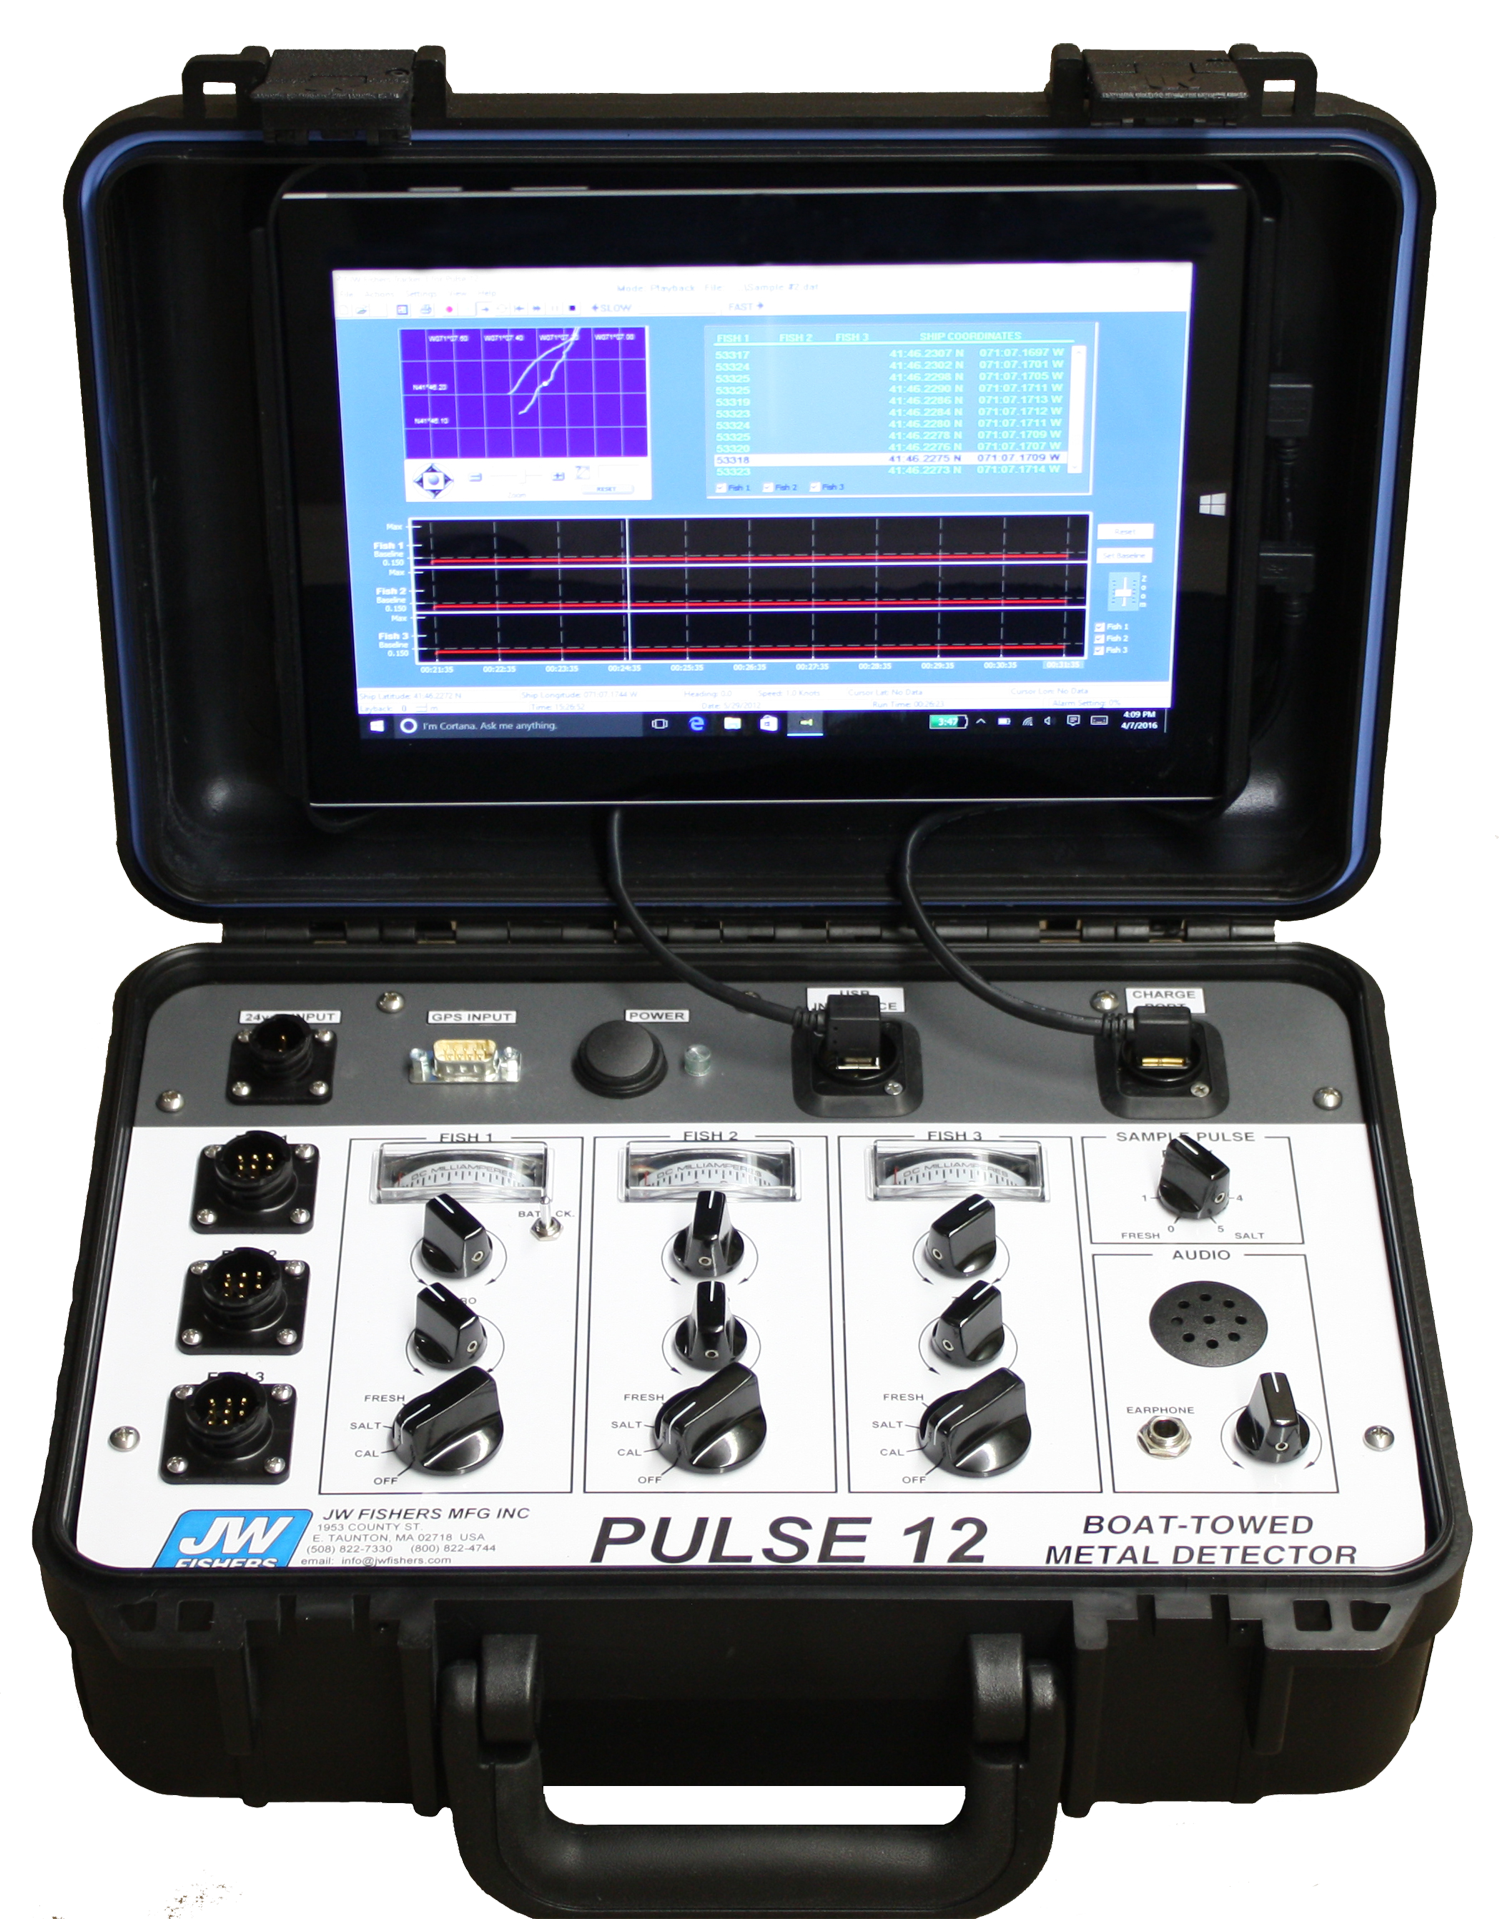 Pulse 12 Control box